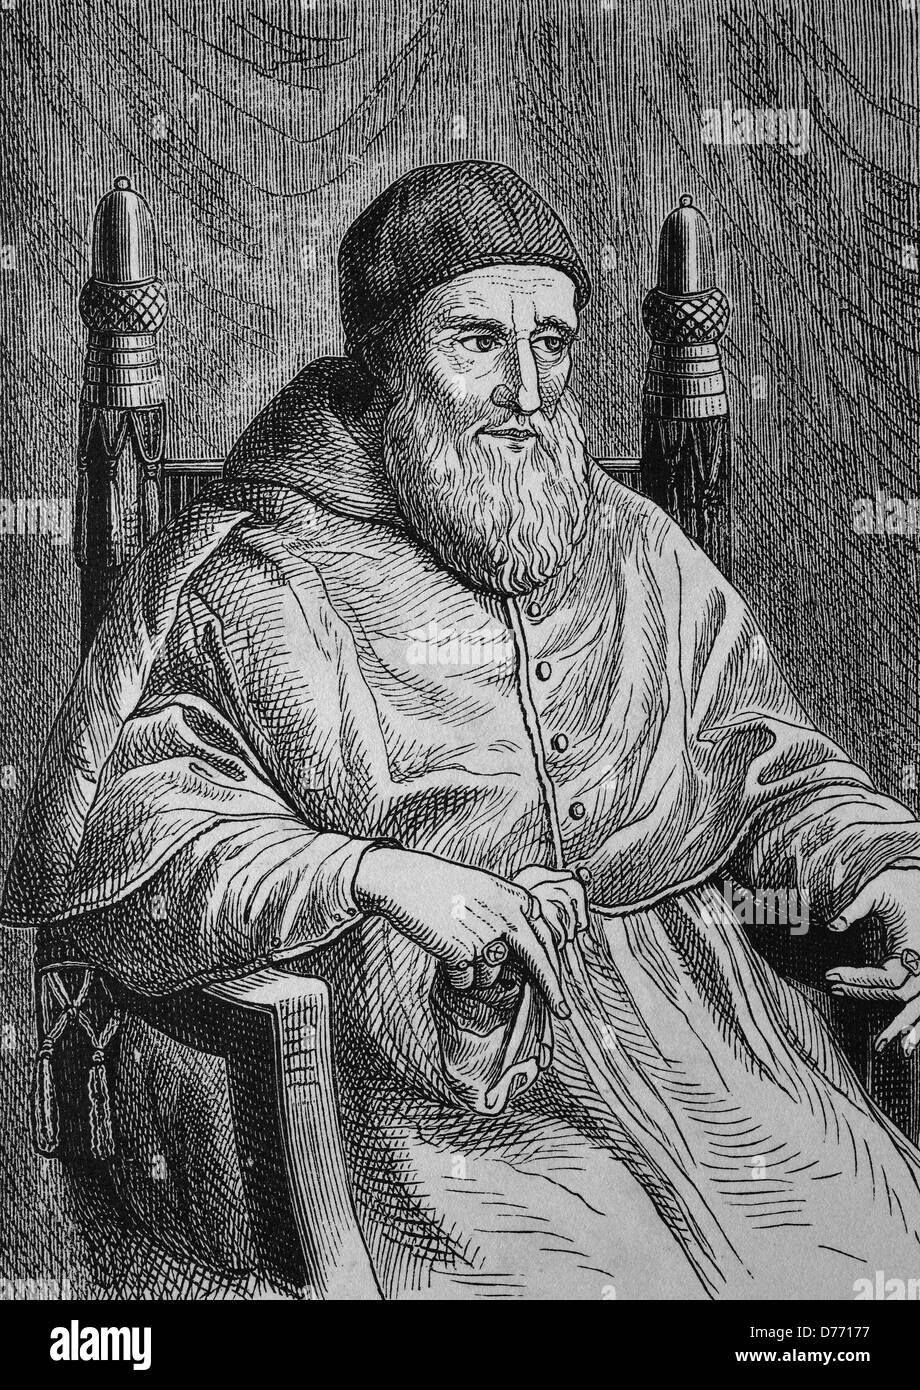 Giuliano della Rovere, il Papa Giulio II, 1443 - 1513, fu Papa dal 1503 fino al 1513, fondatore della Guardia Svizzera, xilografia da Foto Stock